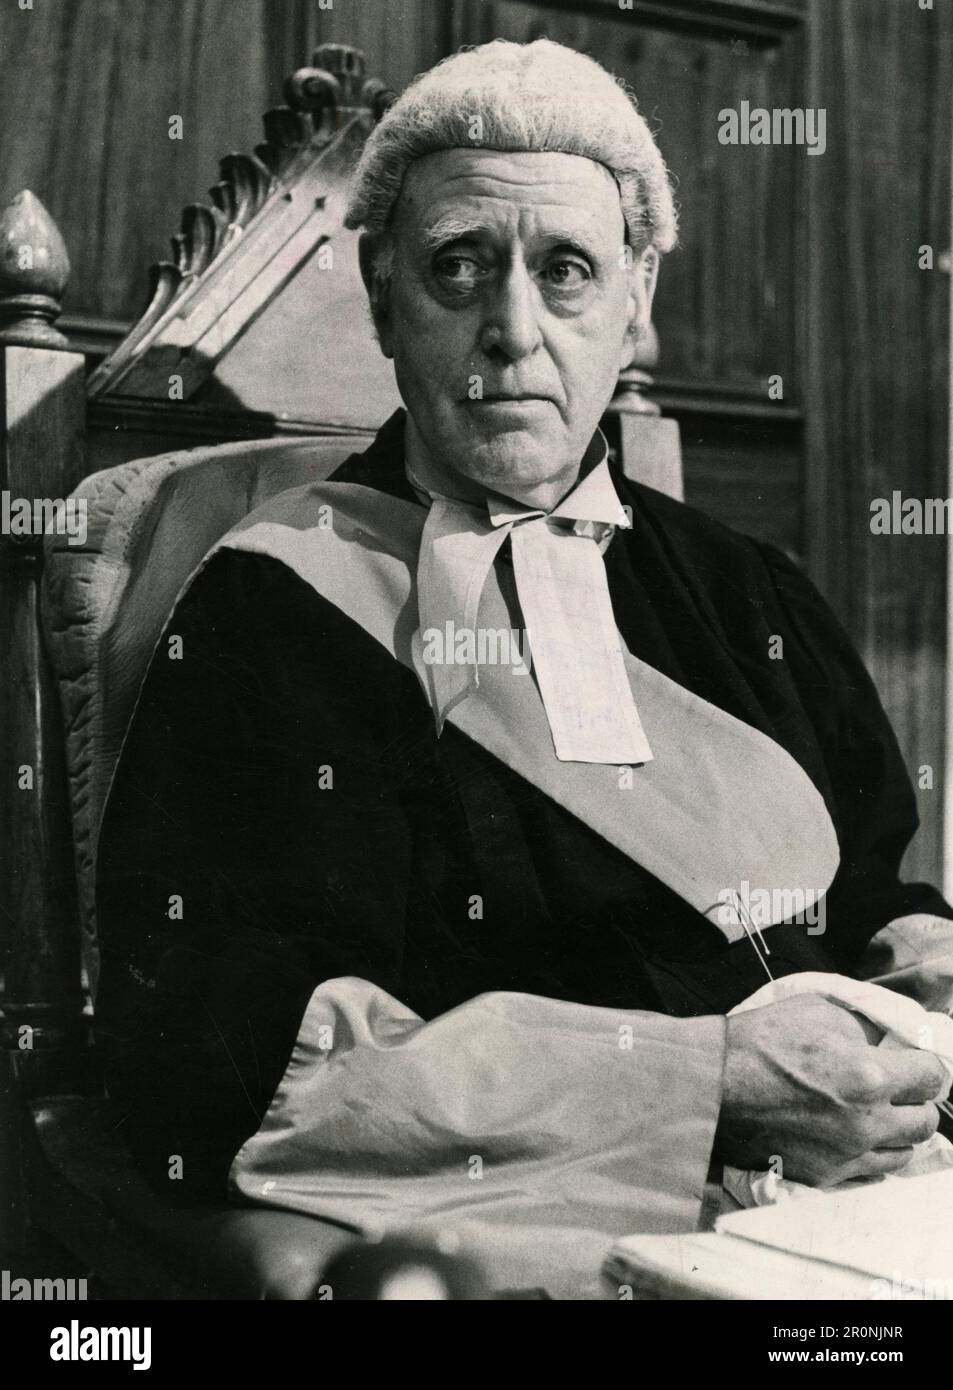 Schauspieler Alastair SIM in der Fernsehserie irreführende Fälle, UK 1968 Stockfoto